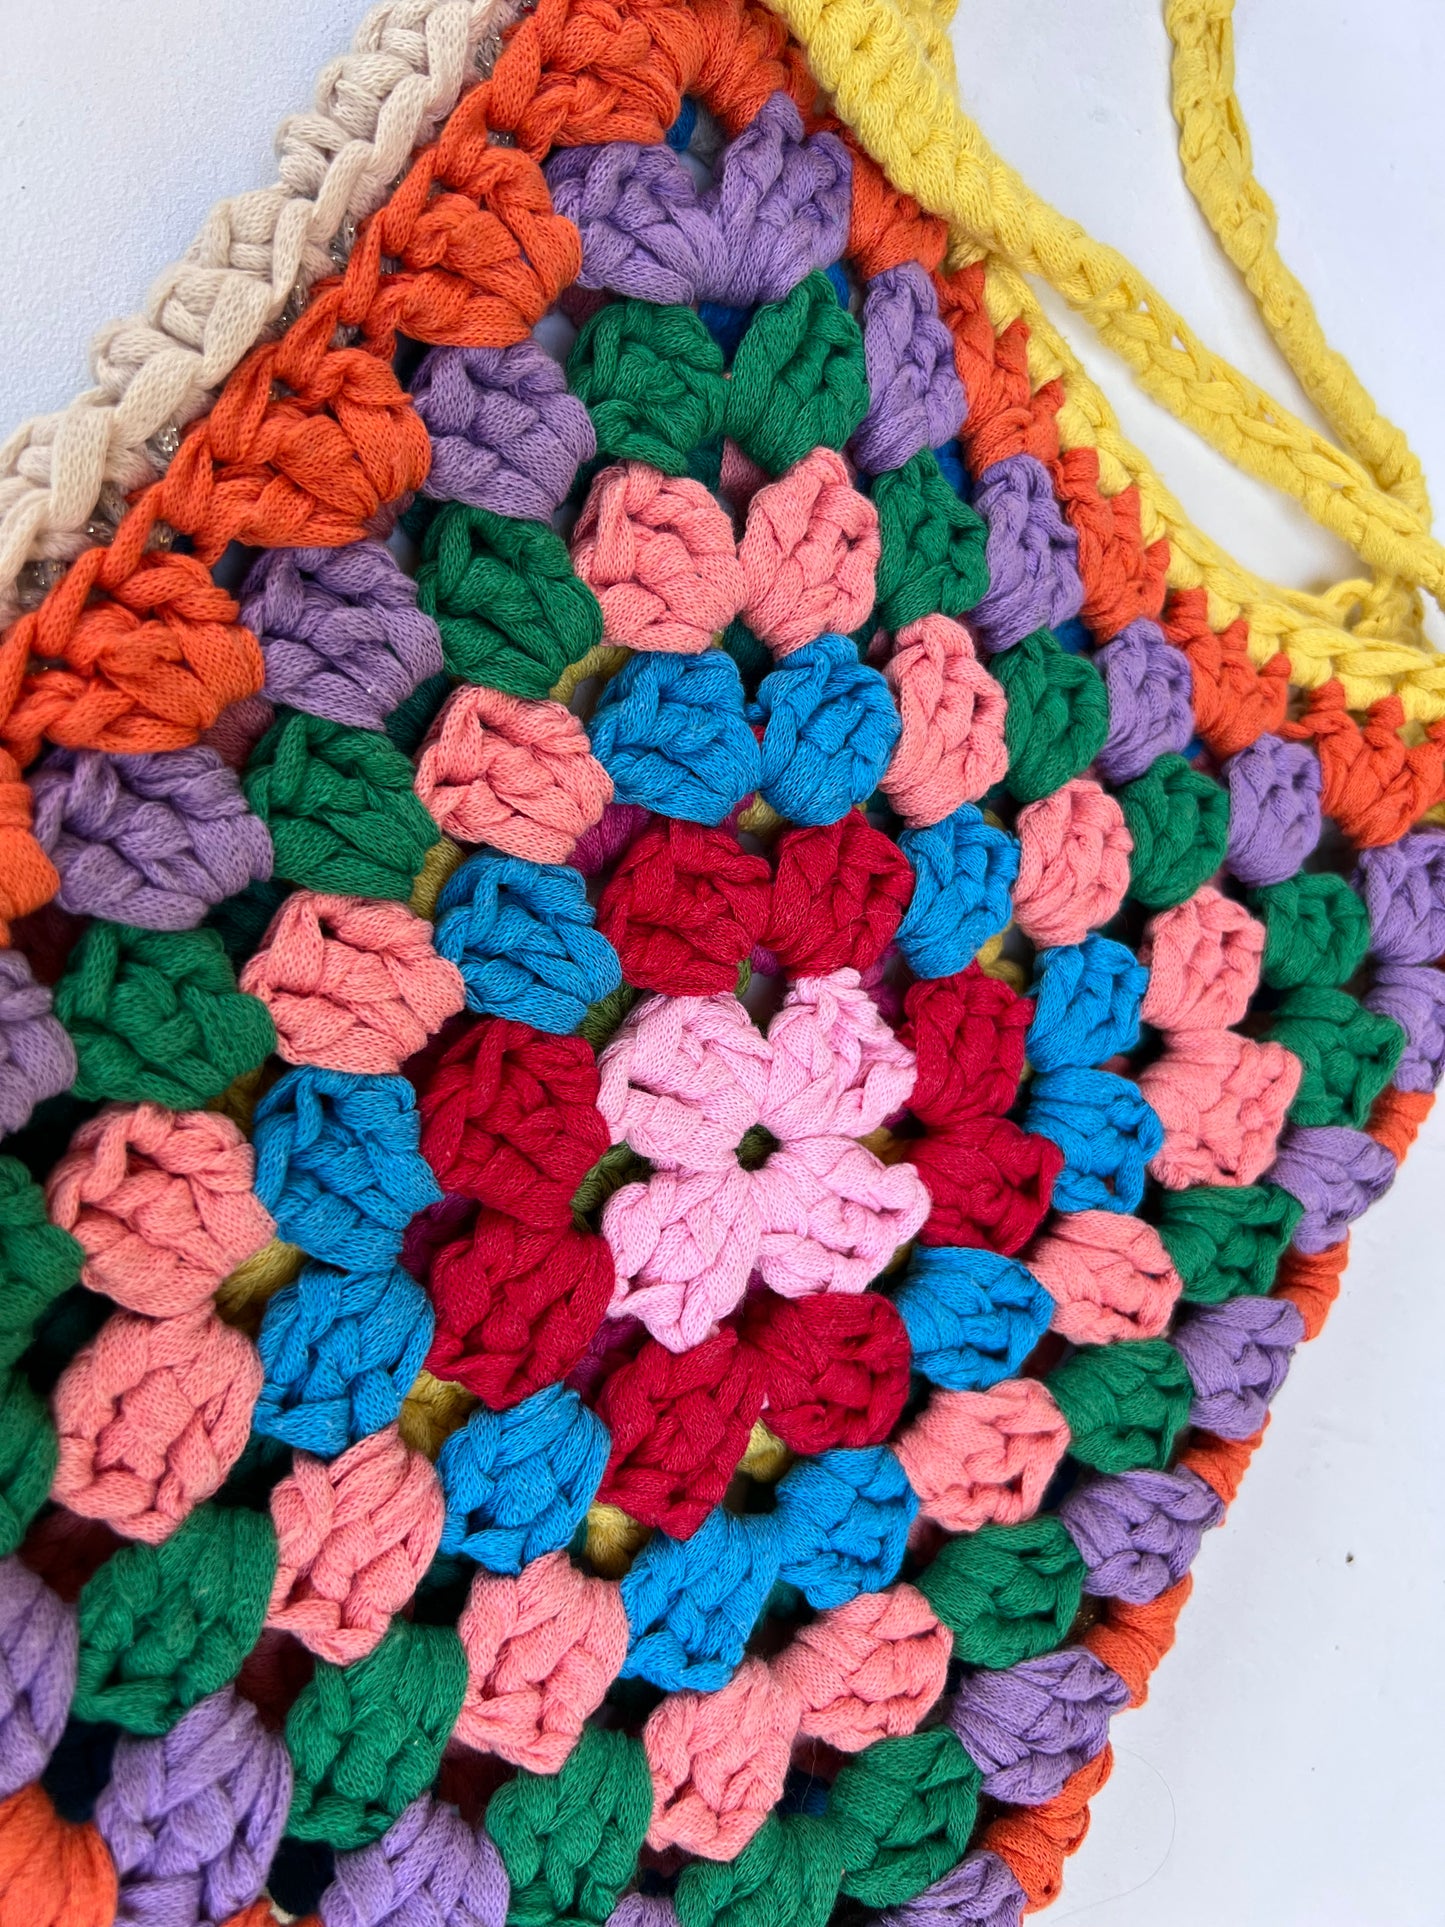 Crocheted colourful granny square tote bag